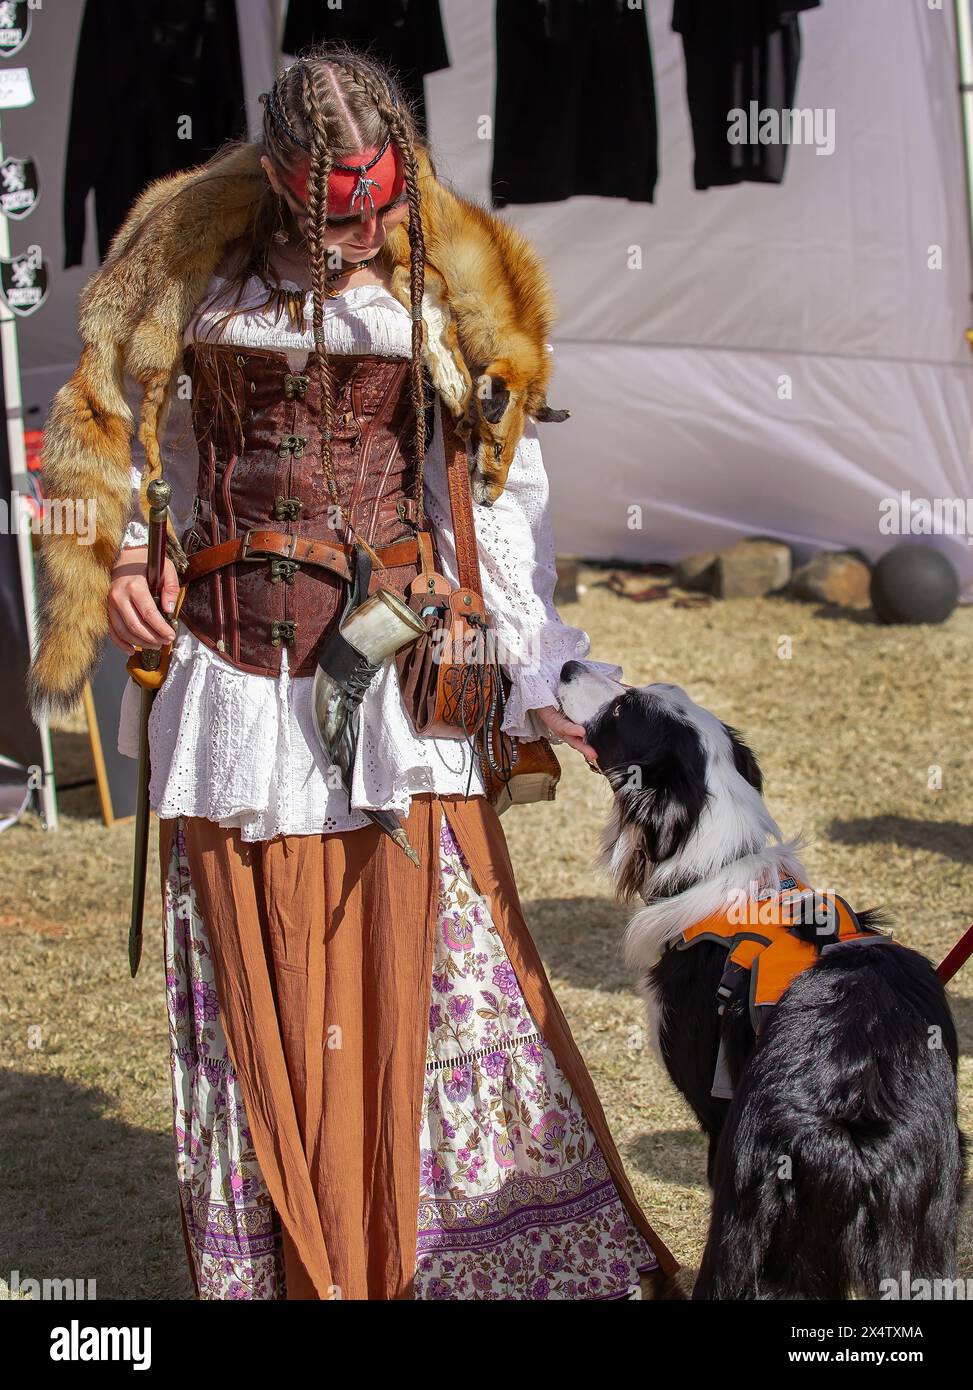 Foire médiévale d'Australie méridionale, événement communautaire divertissant, fille en costume viking avec chien Banque D'Images